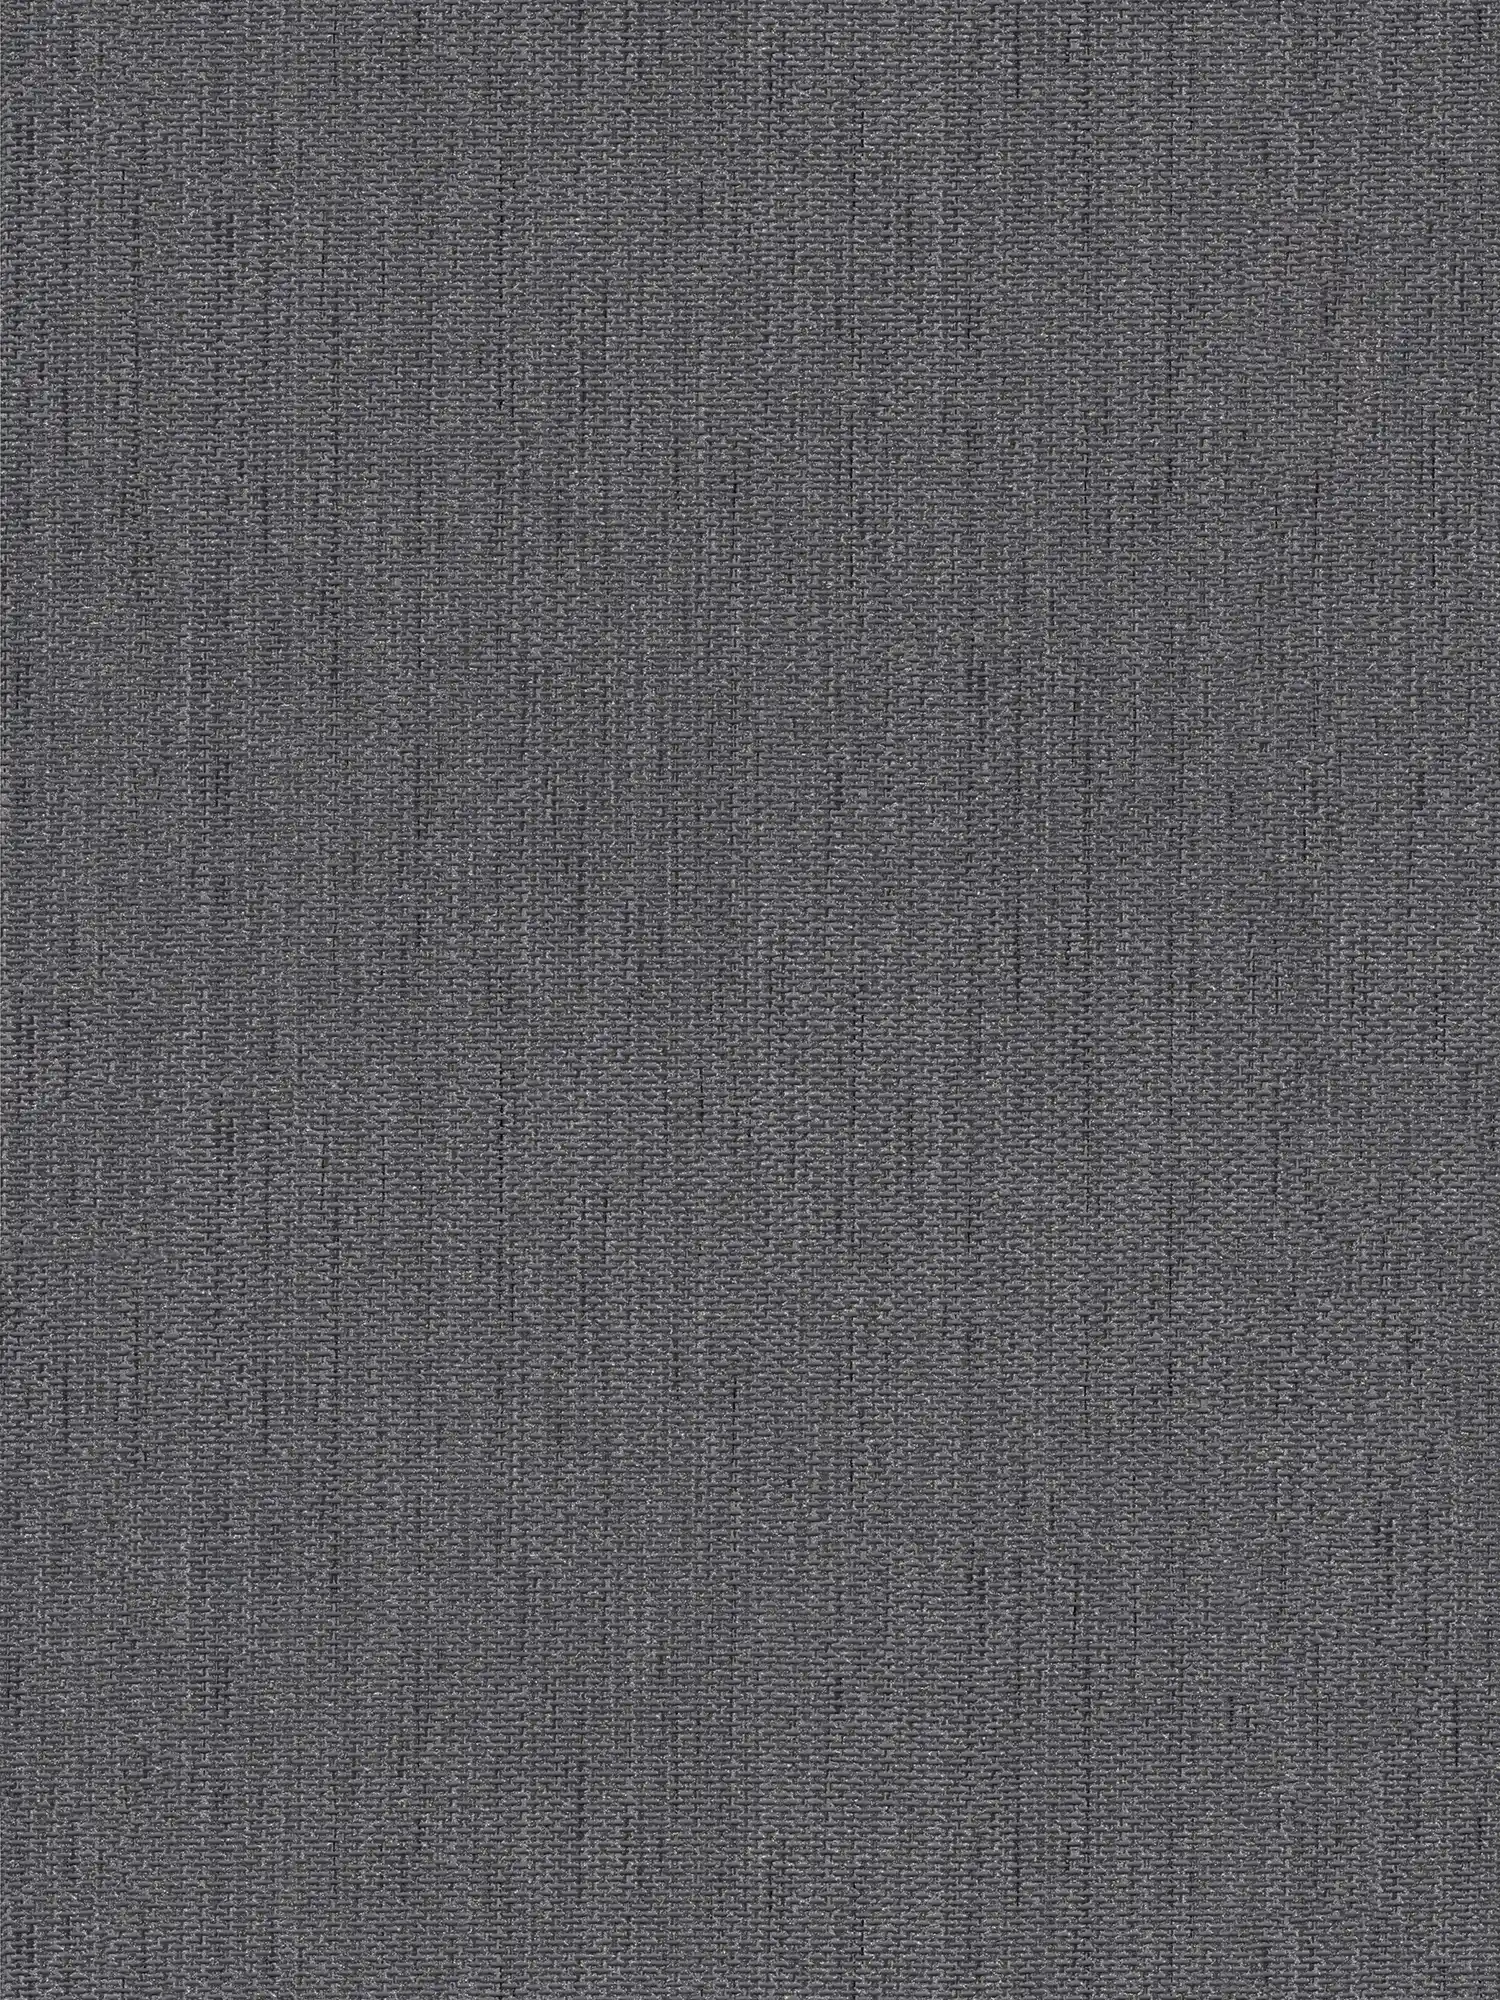 Papel pintado de aspecto de lino con estructura textil - gris, negro
